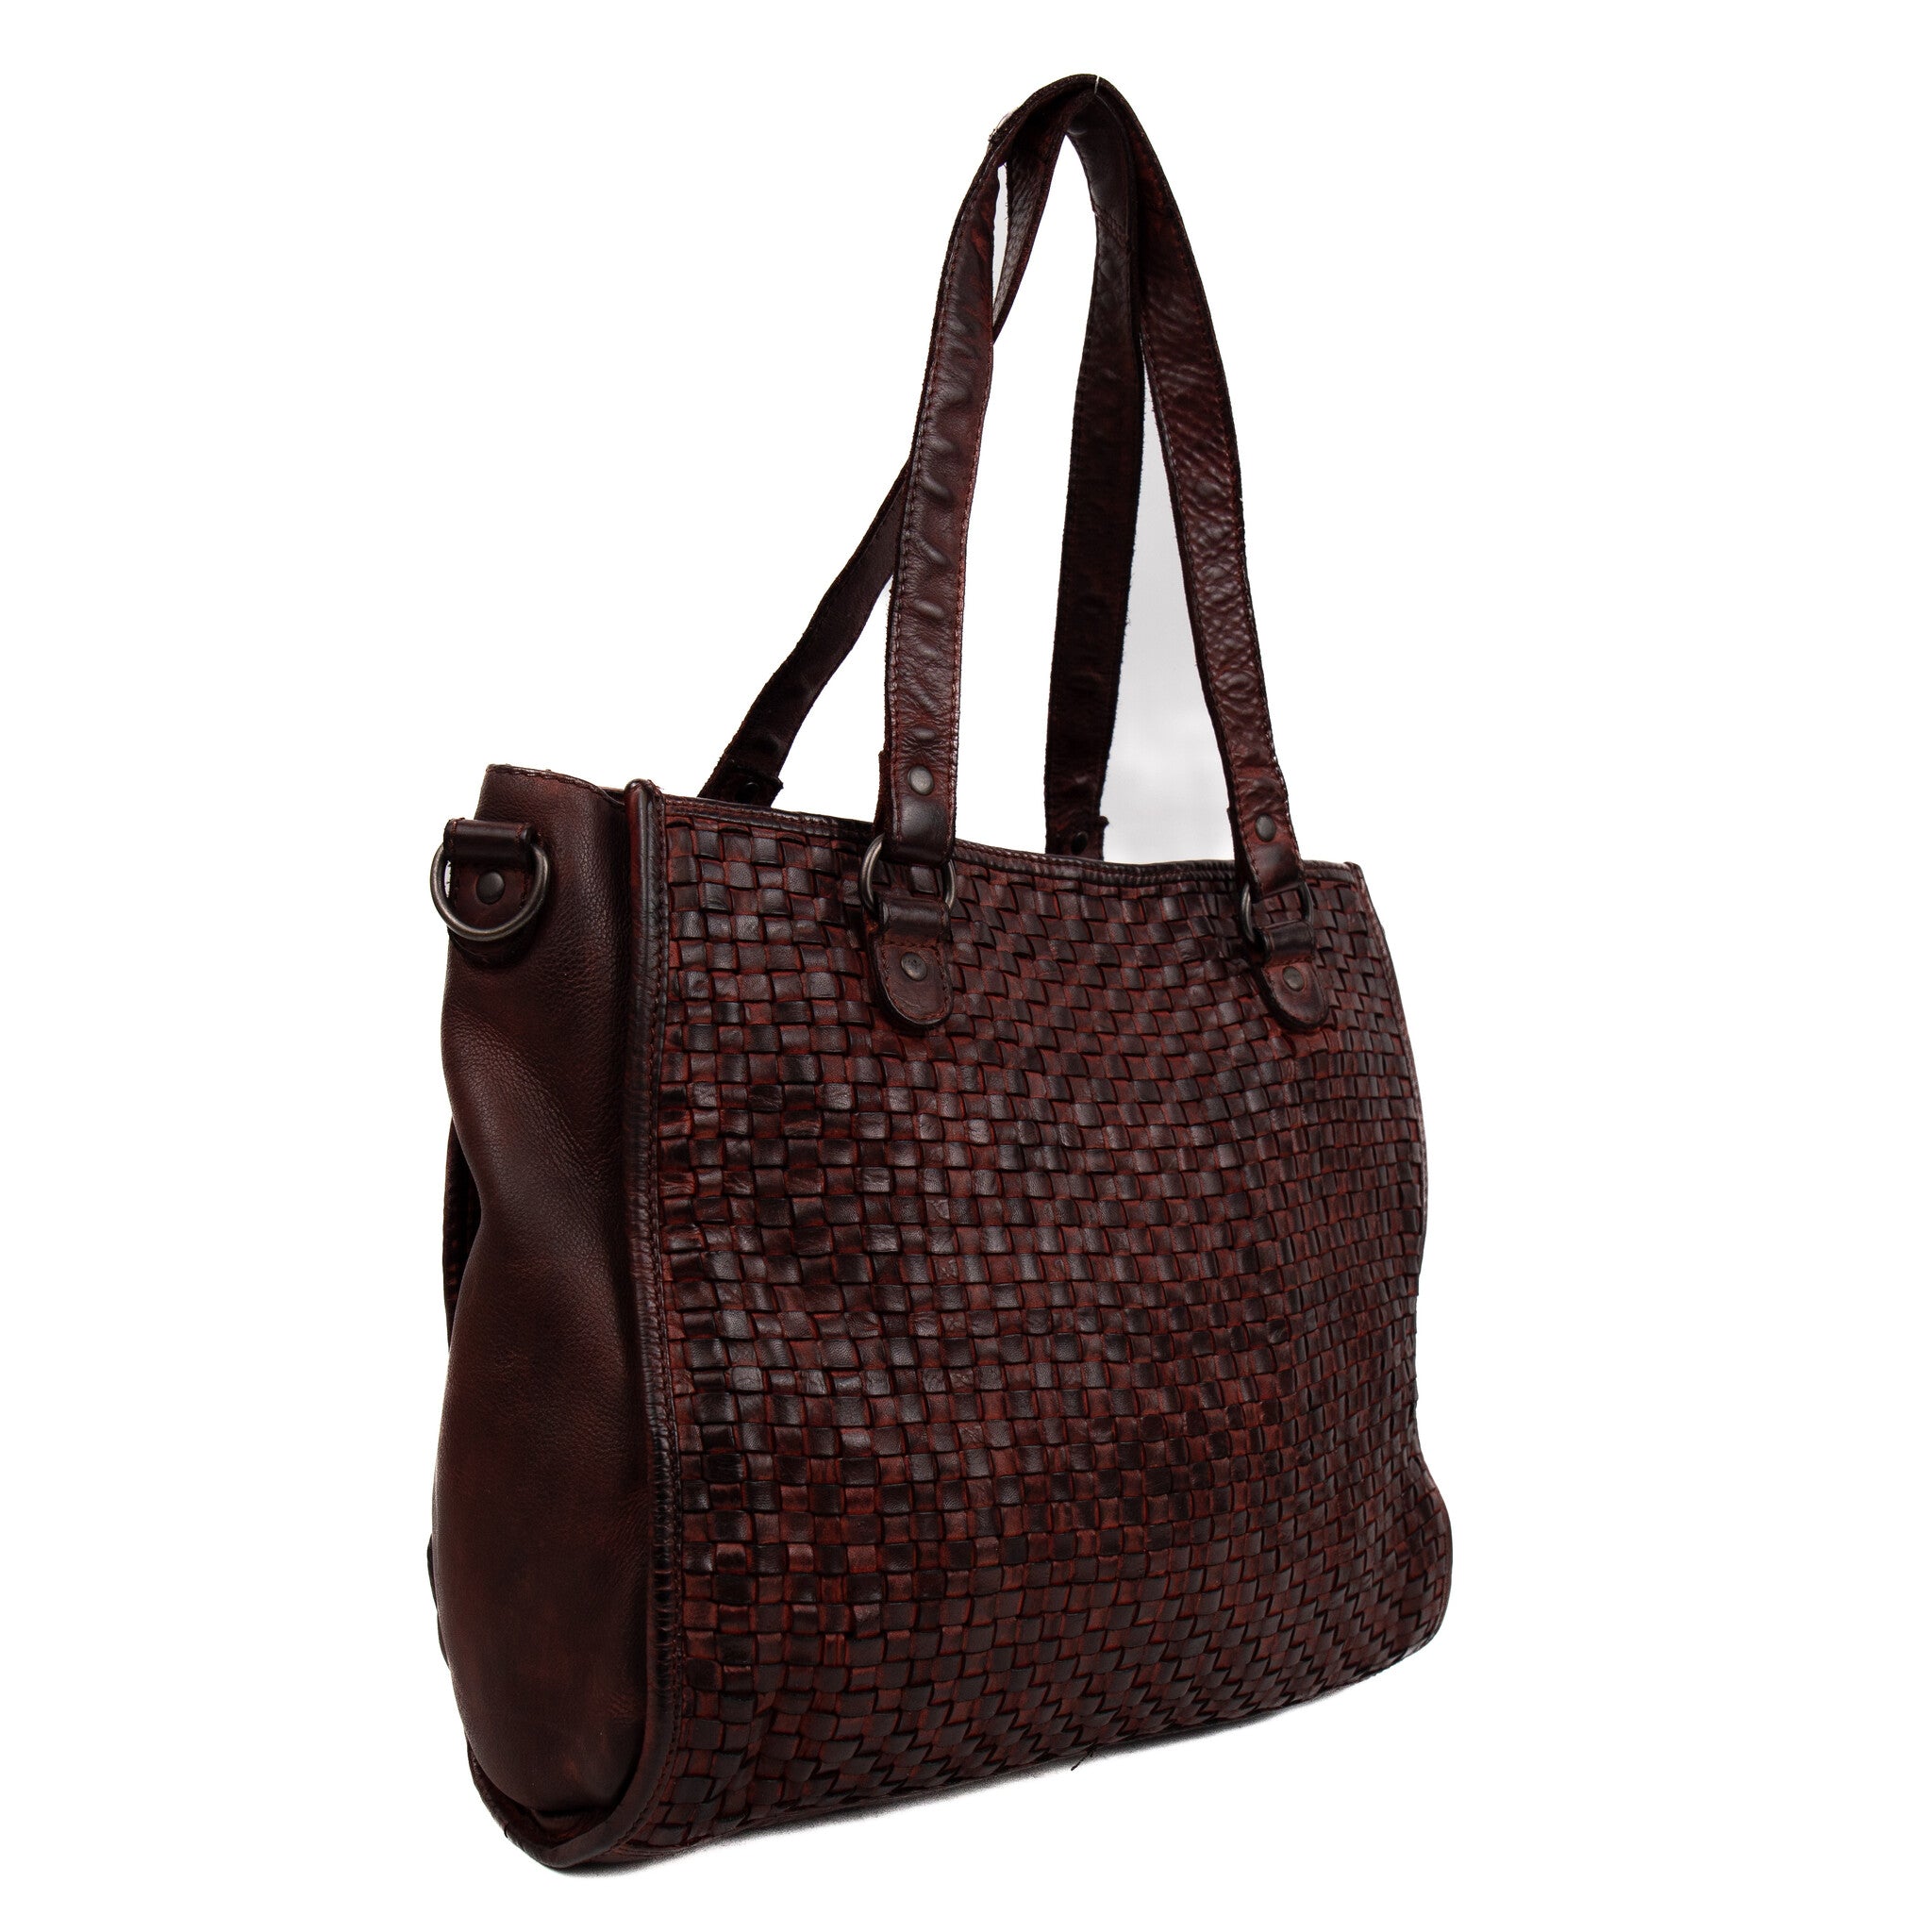 Braided hand/shoulder bag 'Lina' burgundy - CL 43371